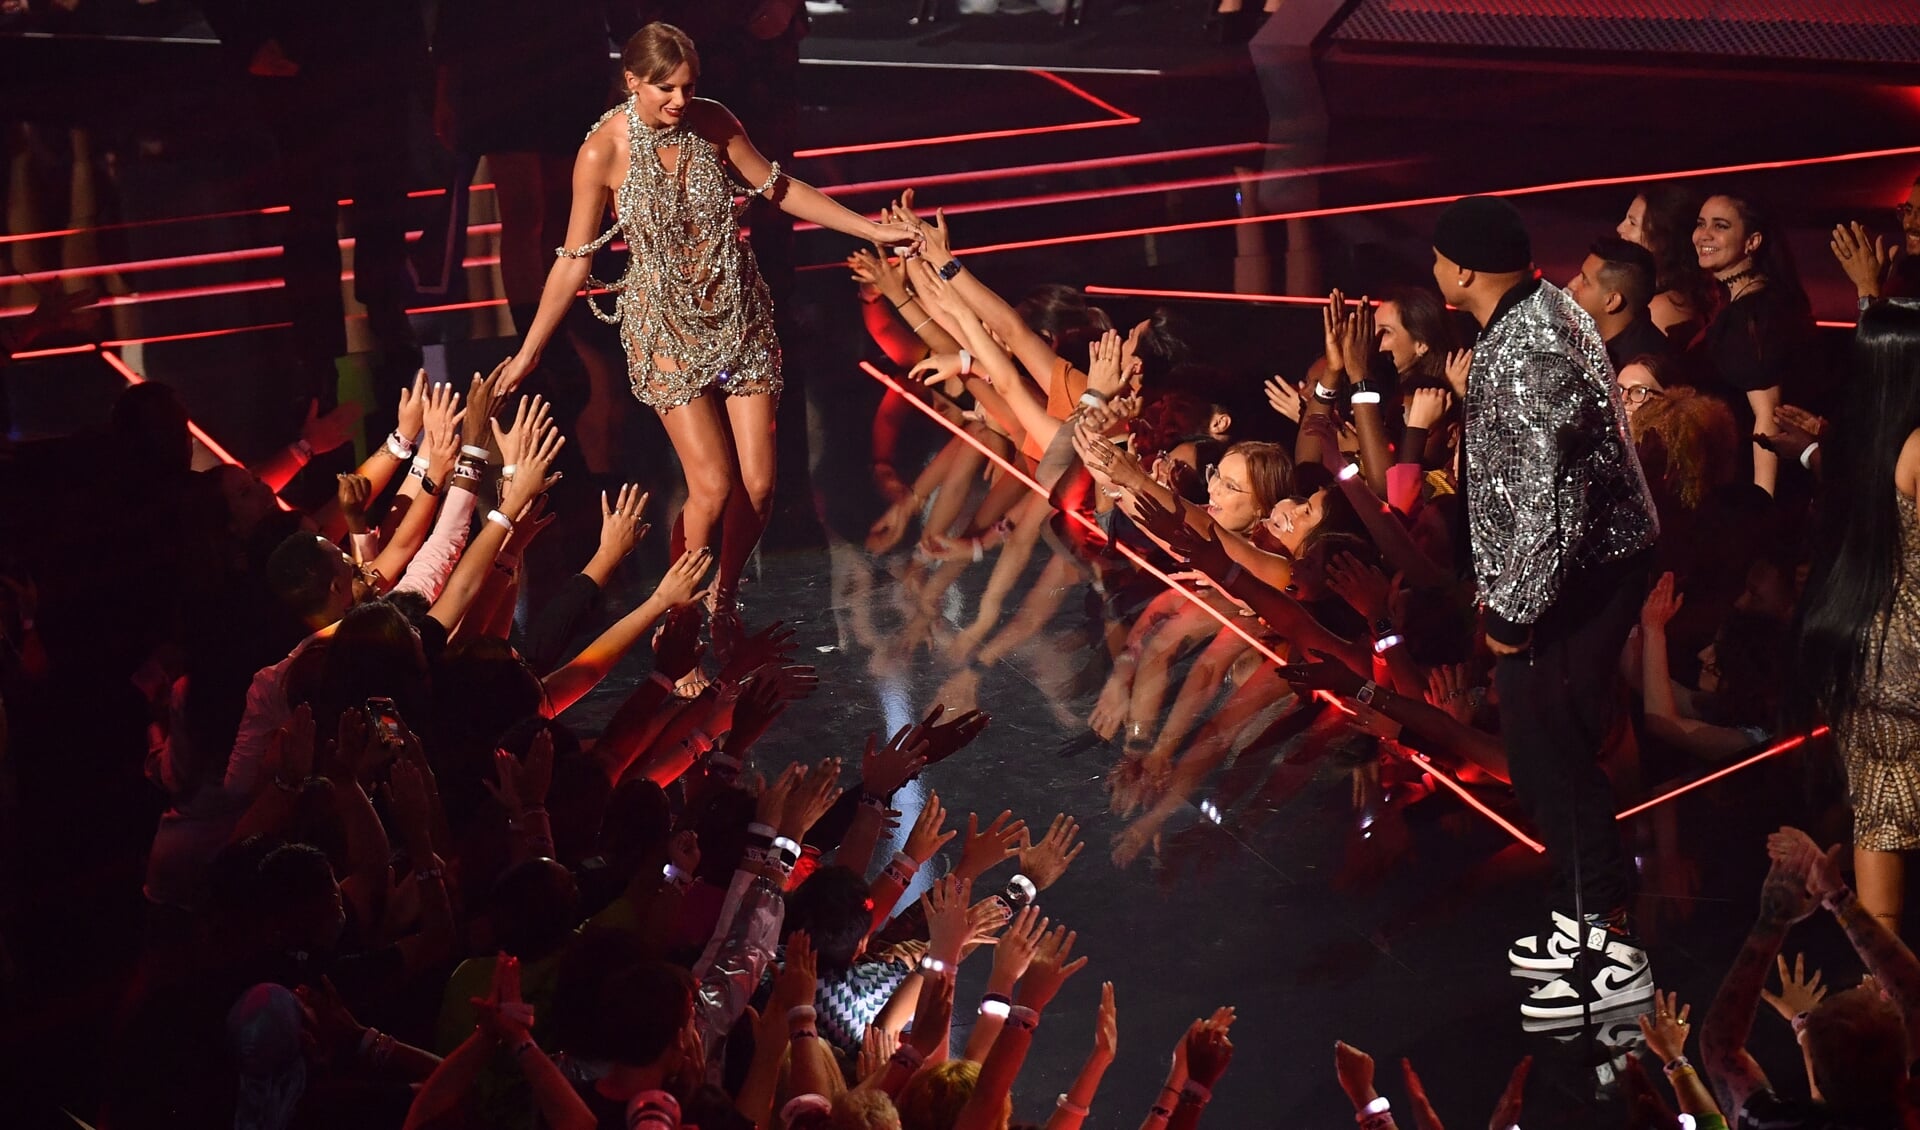 Singer-songwriter Taylor Swift ontvangt de Video van het jaaraward tijdens de MTV Video Music Awards-uitreiking in het Prudential Center in Newark, New Jersey op 28 augustus 2022.